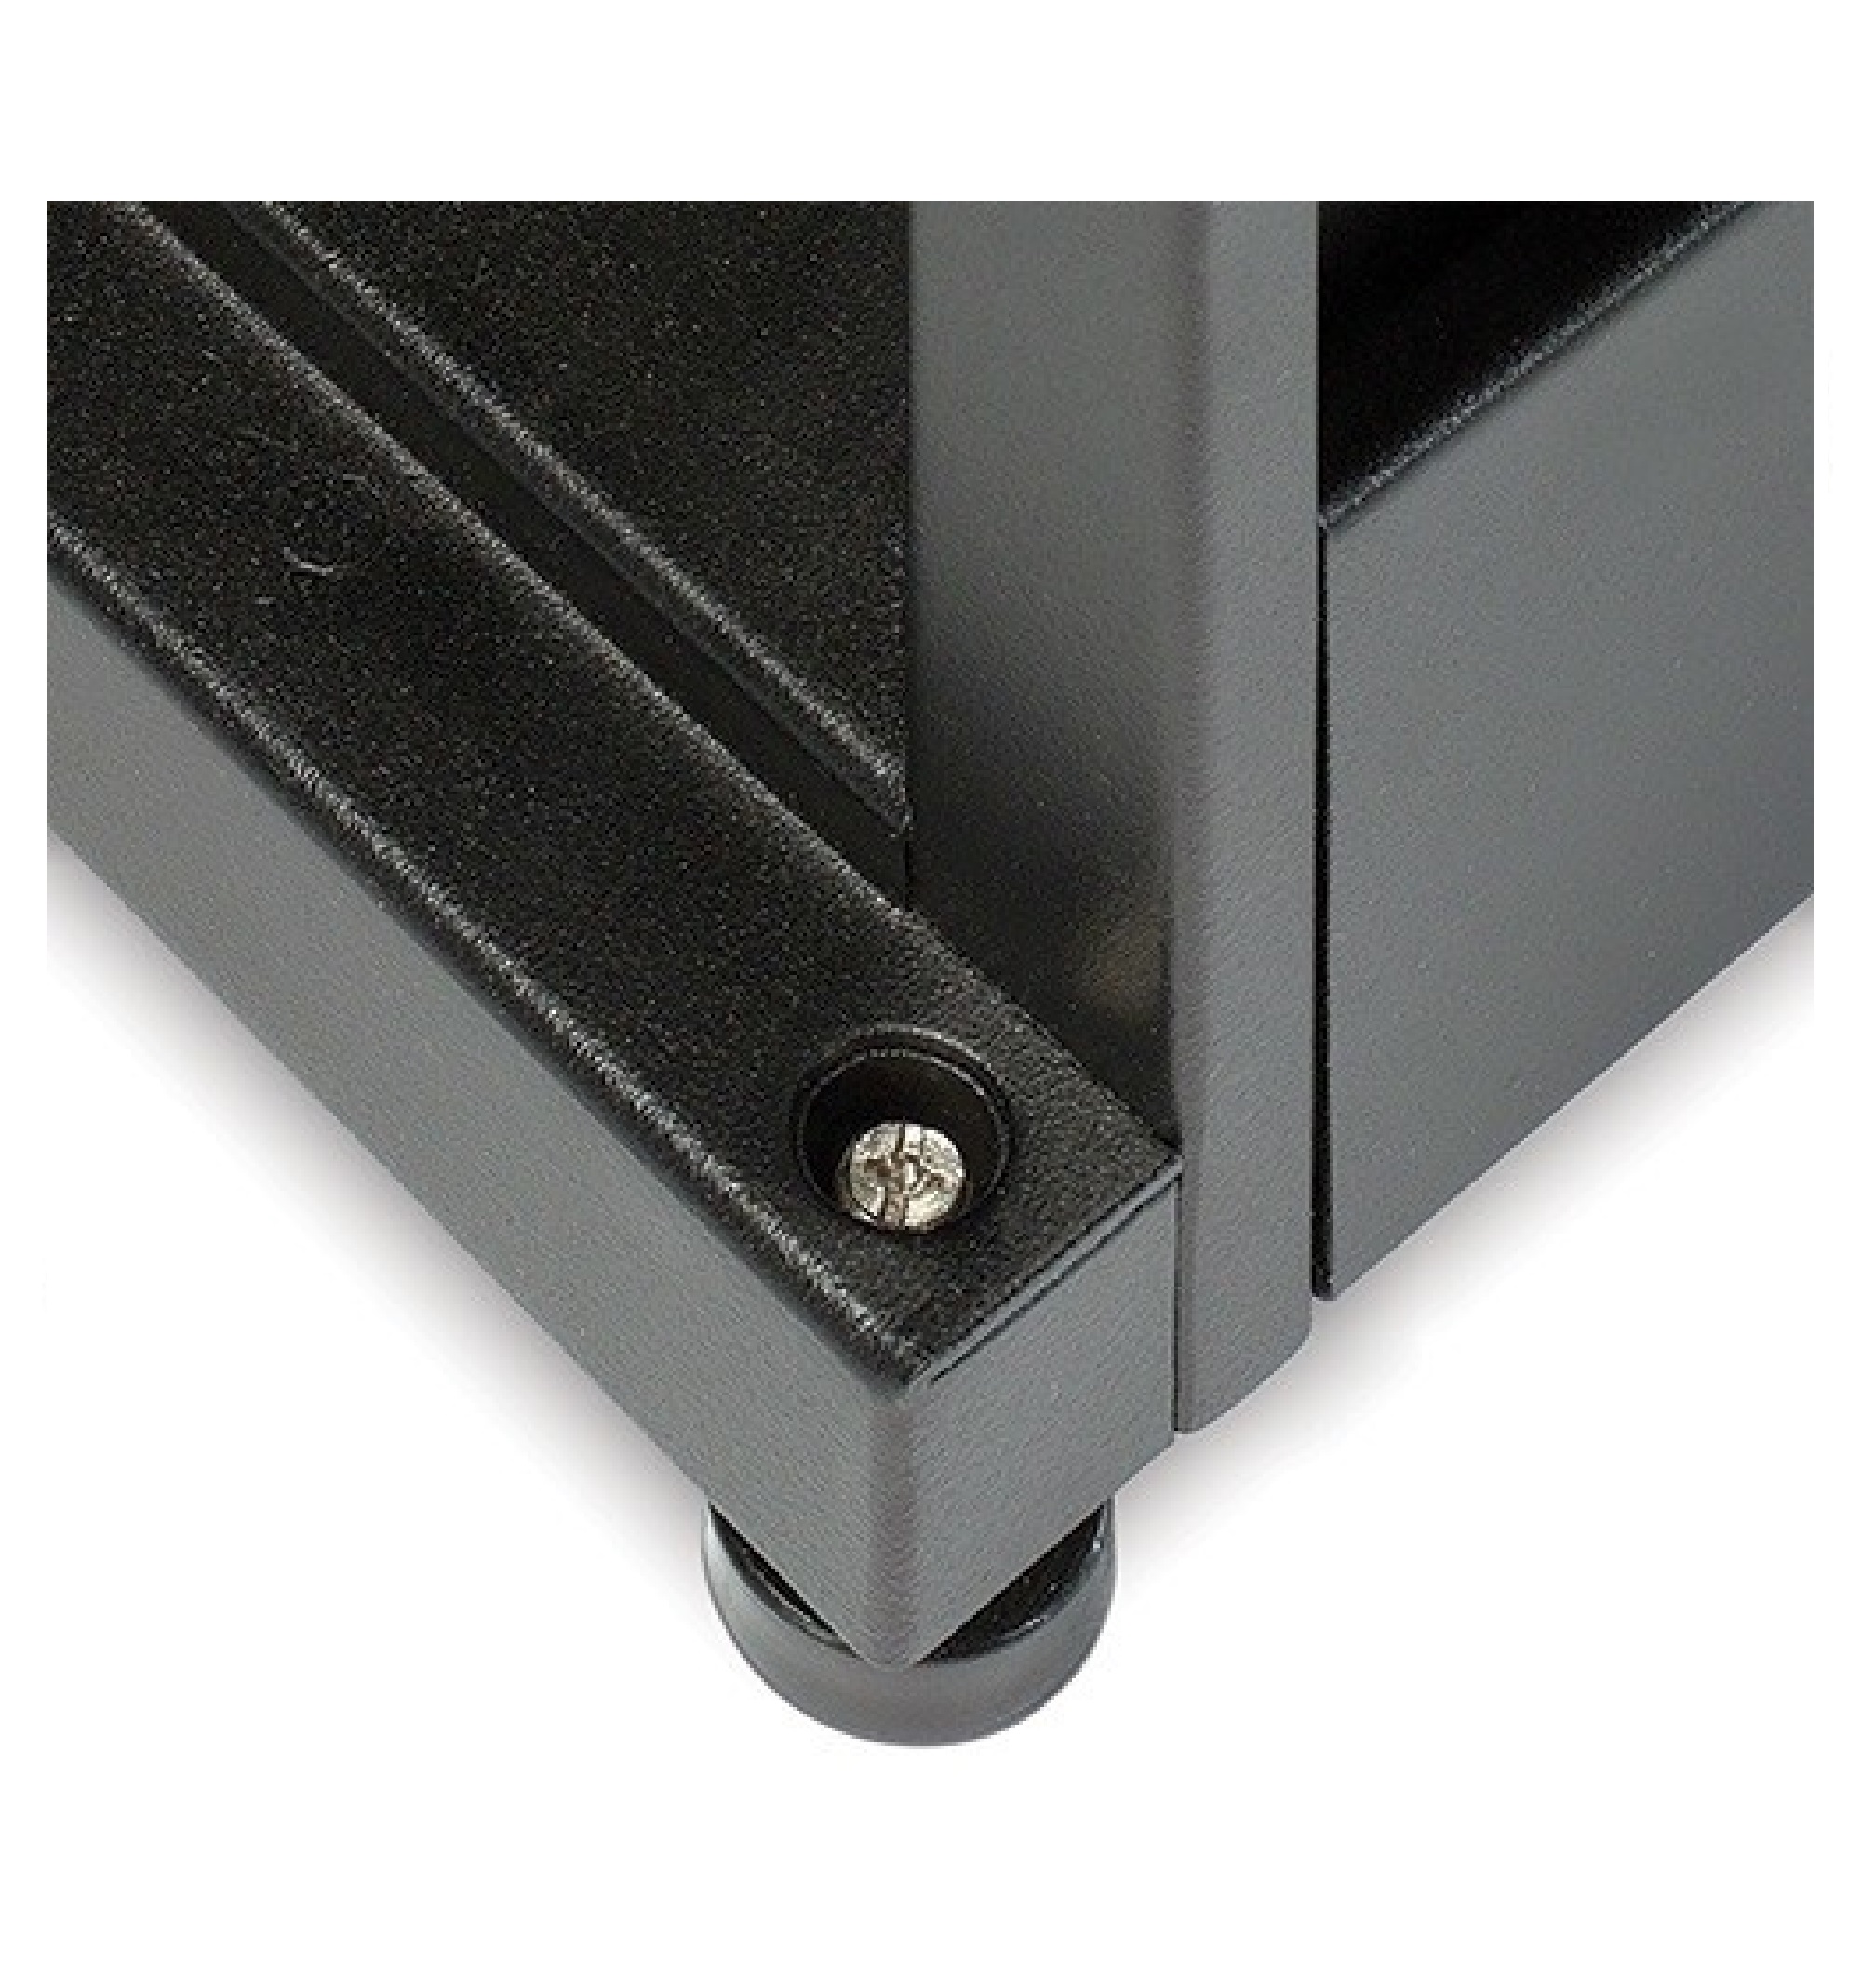 Invólucro NetShelter SX de 24 U, 600 mm de largura x 1070 mm de profundidade, com painéis laterais, preto